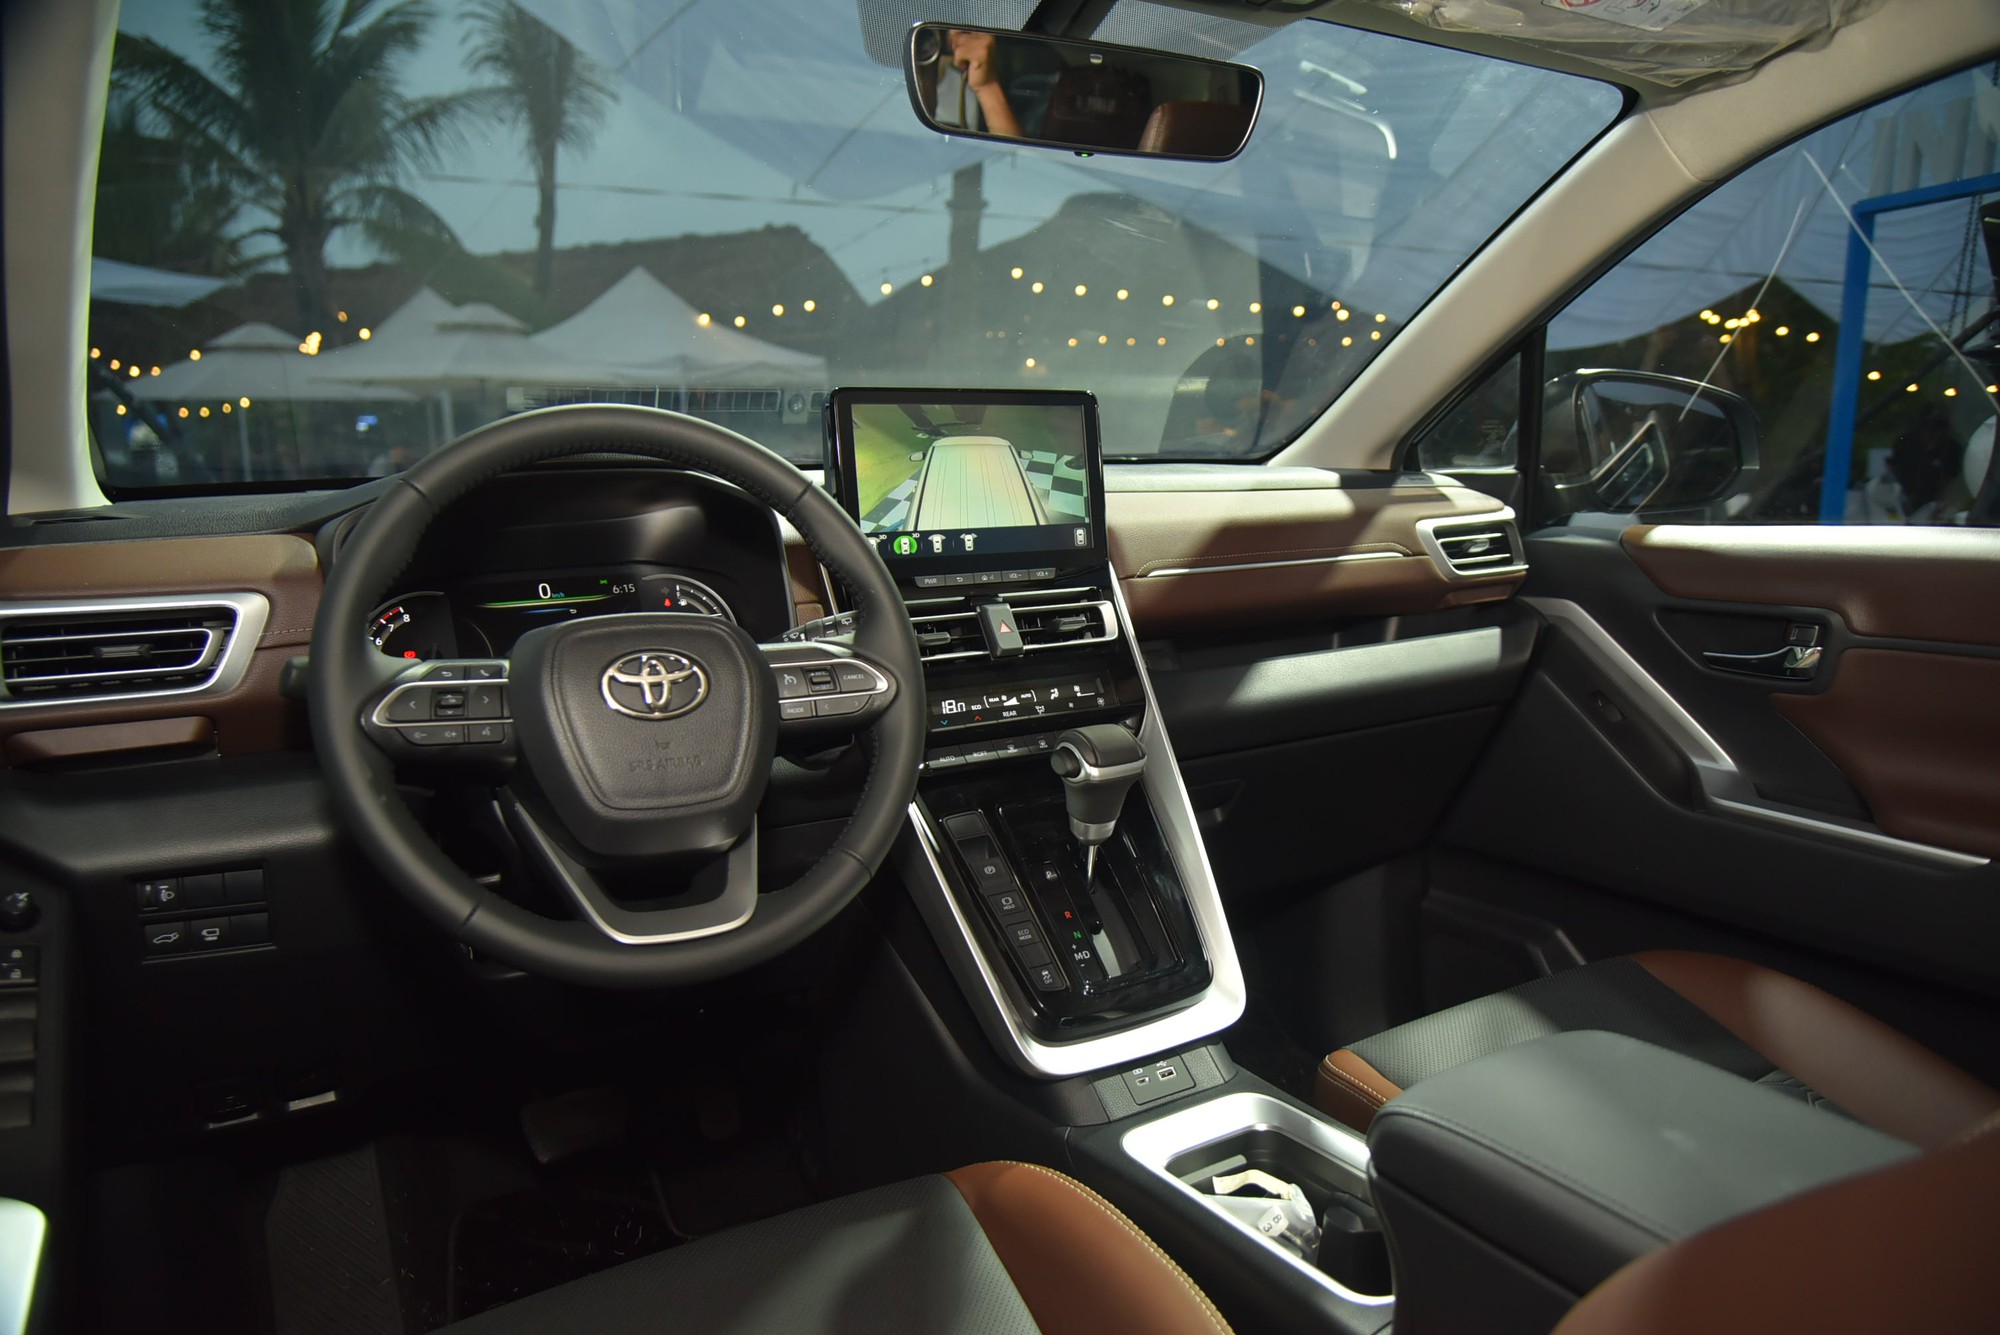 Ngồi thử Toyota Innova Cross bản xăng: Giá 810 triệu đồng, trang bị vừa miếng - Ảnh 8.